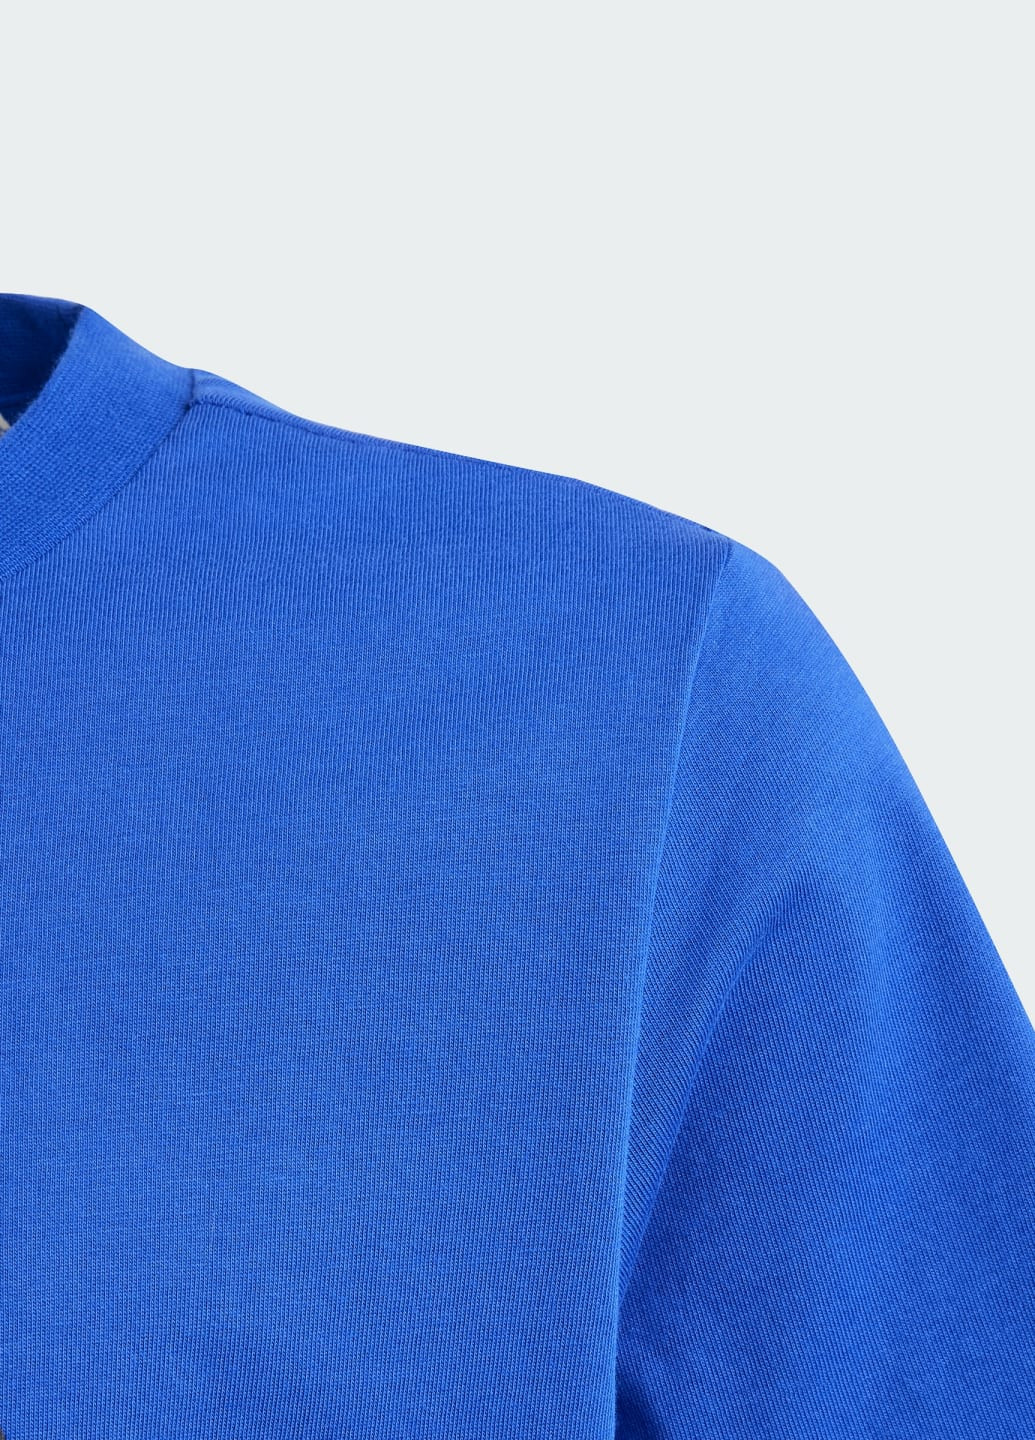 Синяя демисезонная футболка essentials big logo cotton adidas